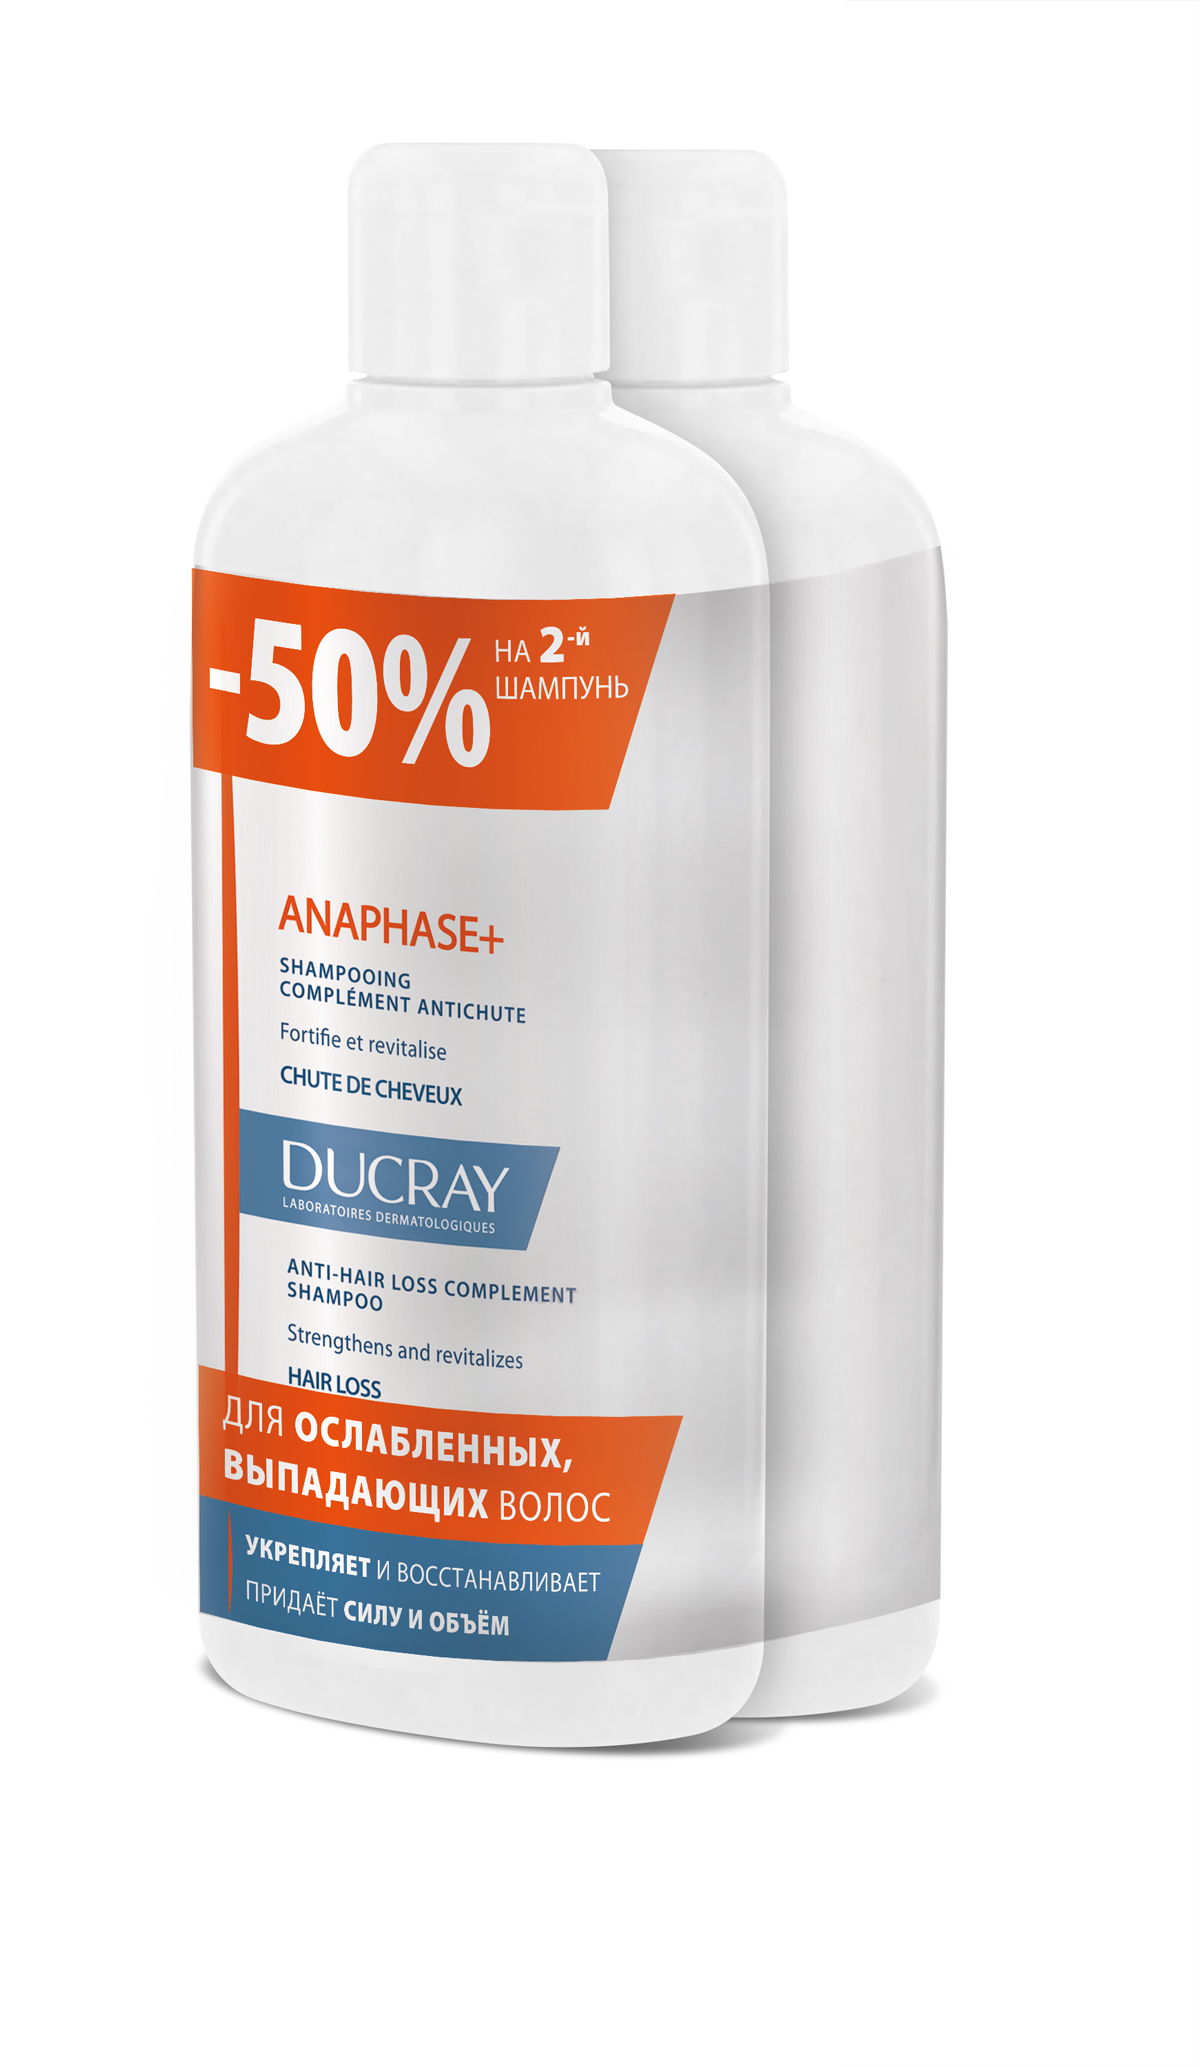 Ducray Набор Анафаз+ Шампунь для ослабленных, выпадающих волос 400 мл 2 шт скидка 50% на второй продукт лак для волос lisap